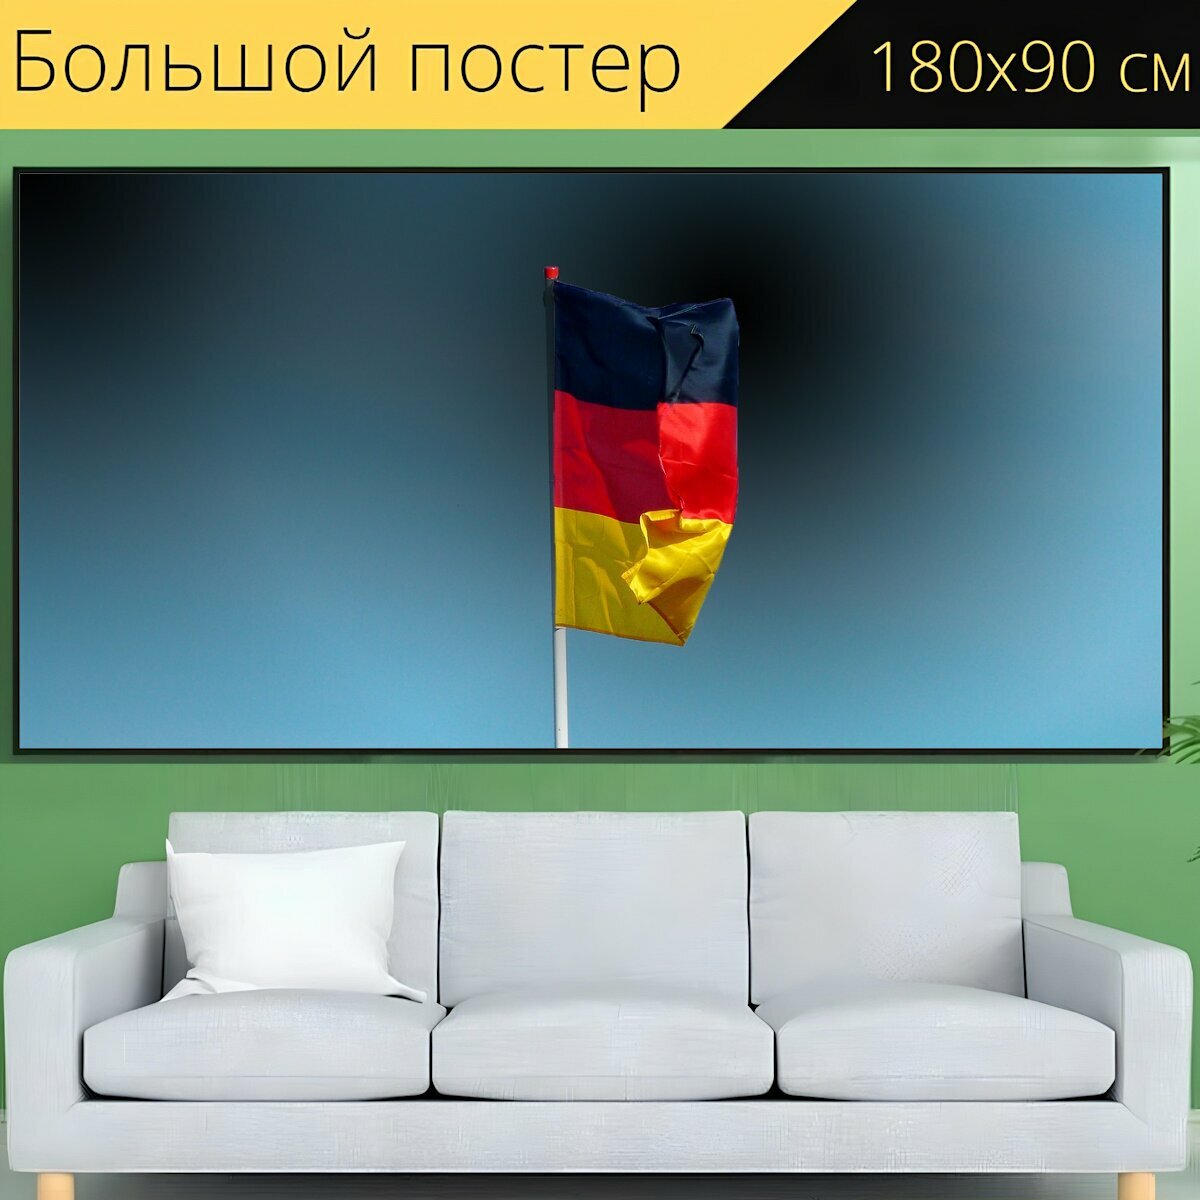 Большой постер "Флаг германии, баннер, знамя" 180 x 90 см. для интерьера